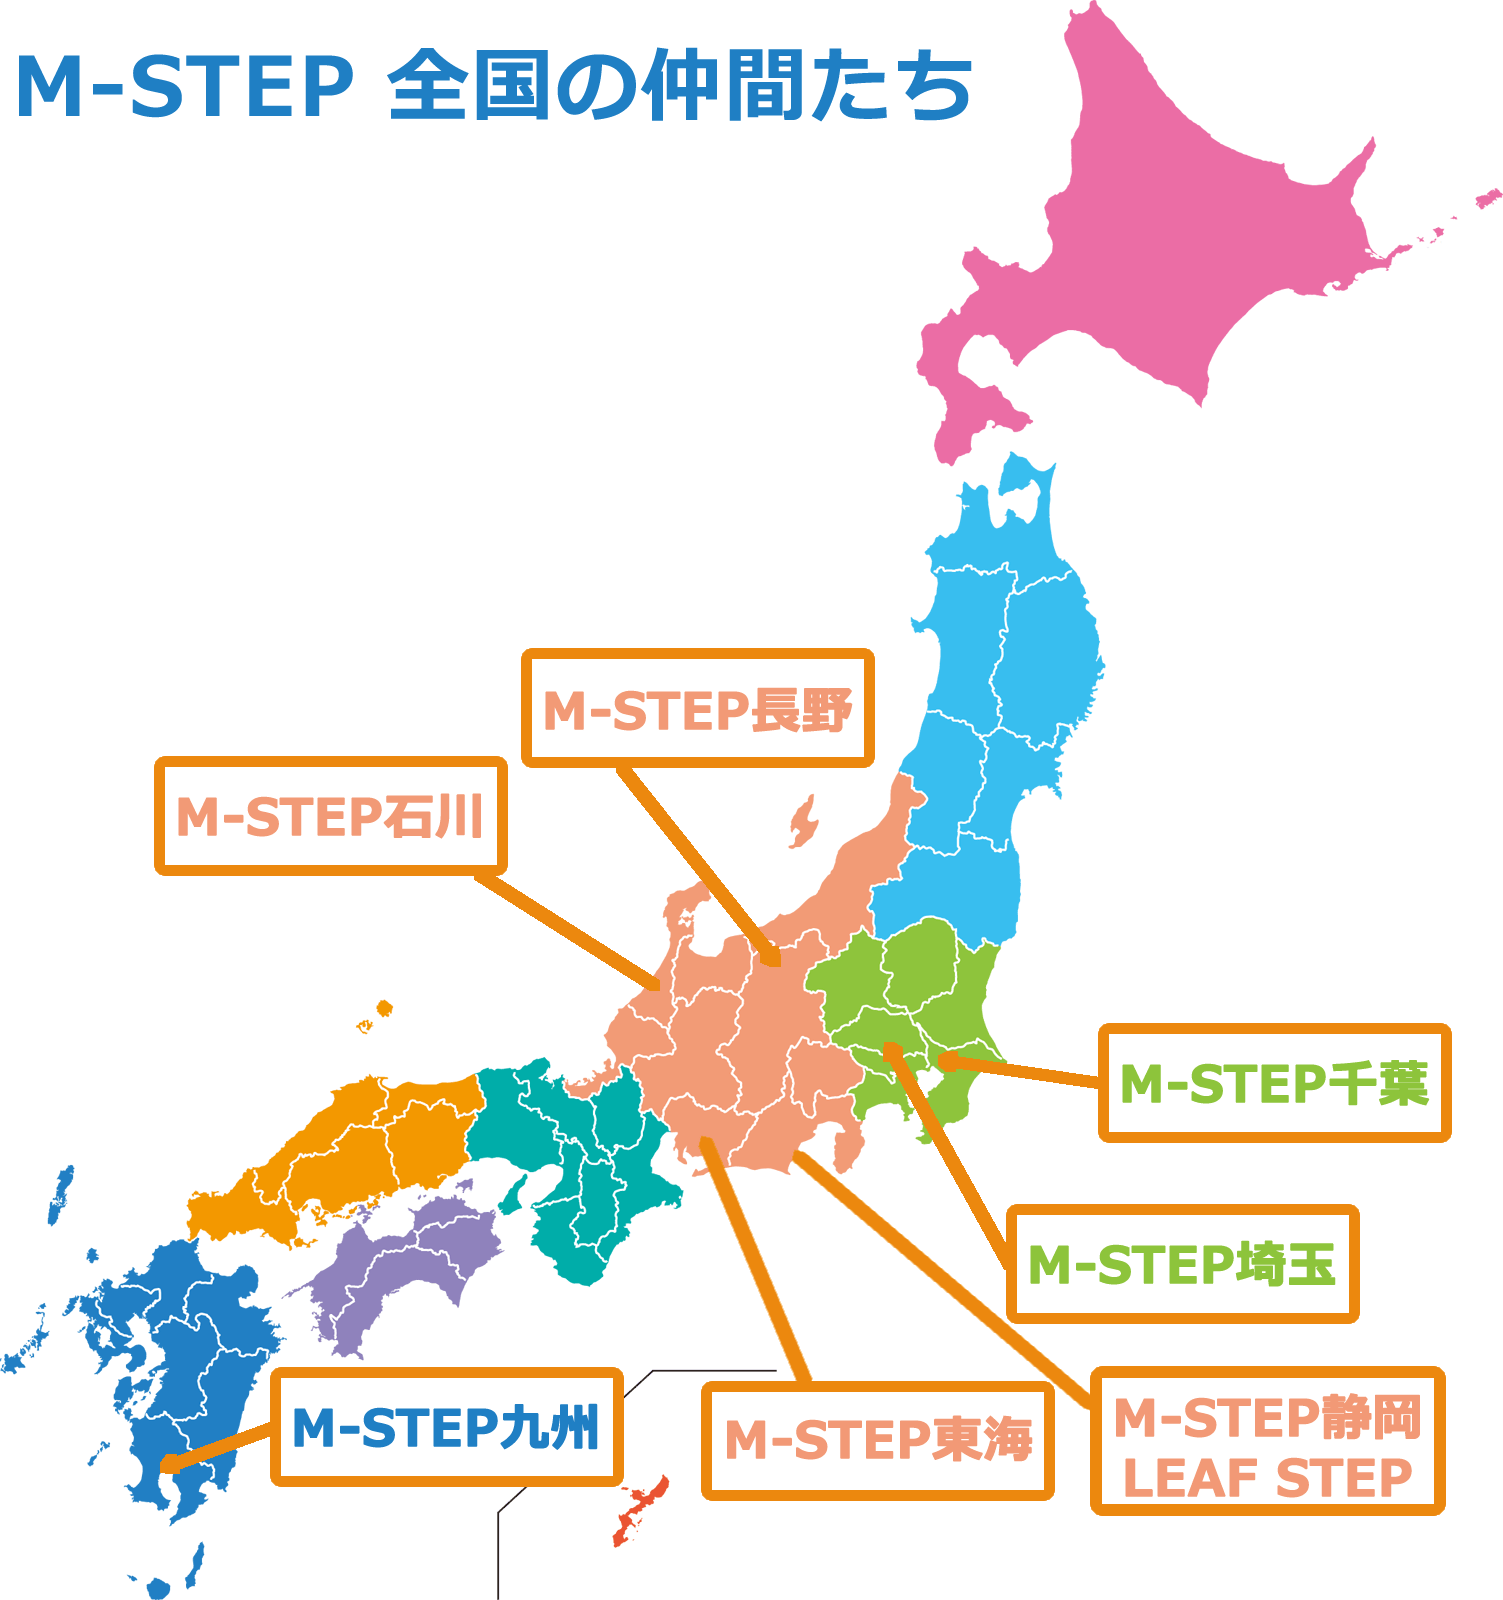 M-STEP全国の仲間たち